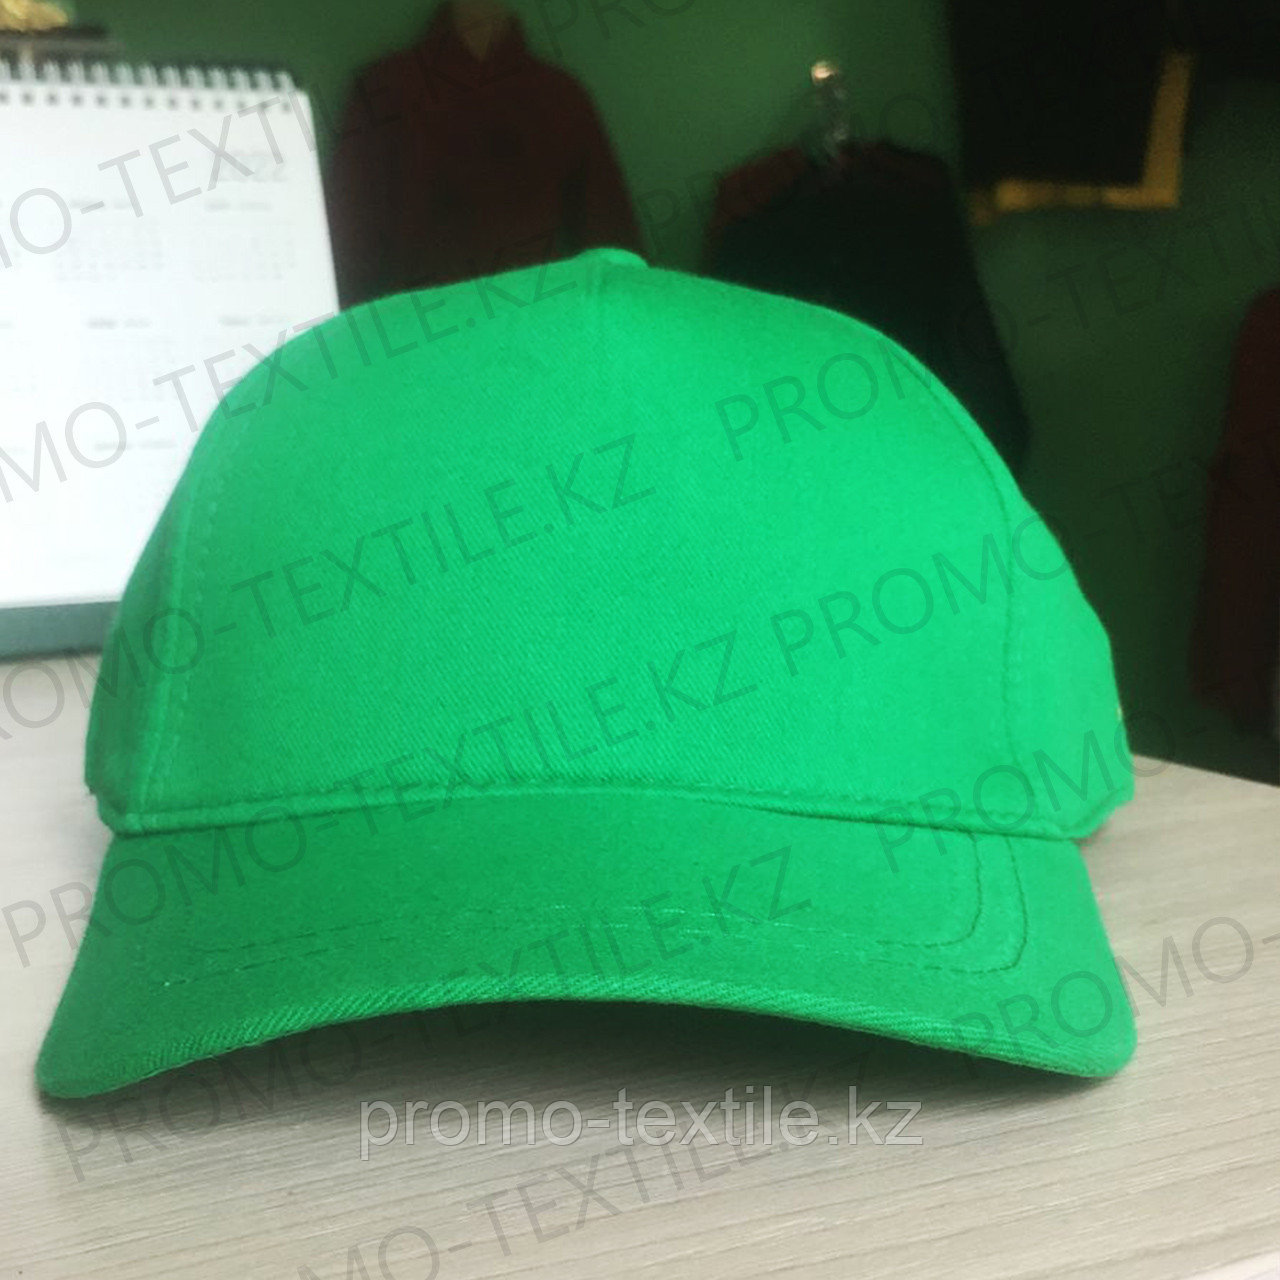 Зеленые кепки под нанесение | Бейсболка зеленого цвета